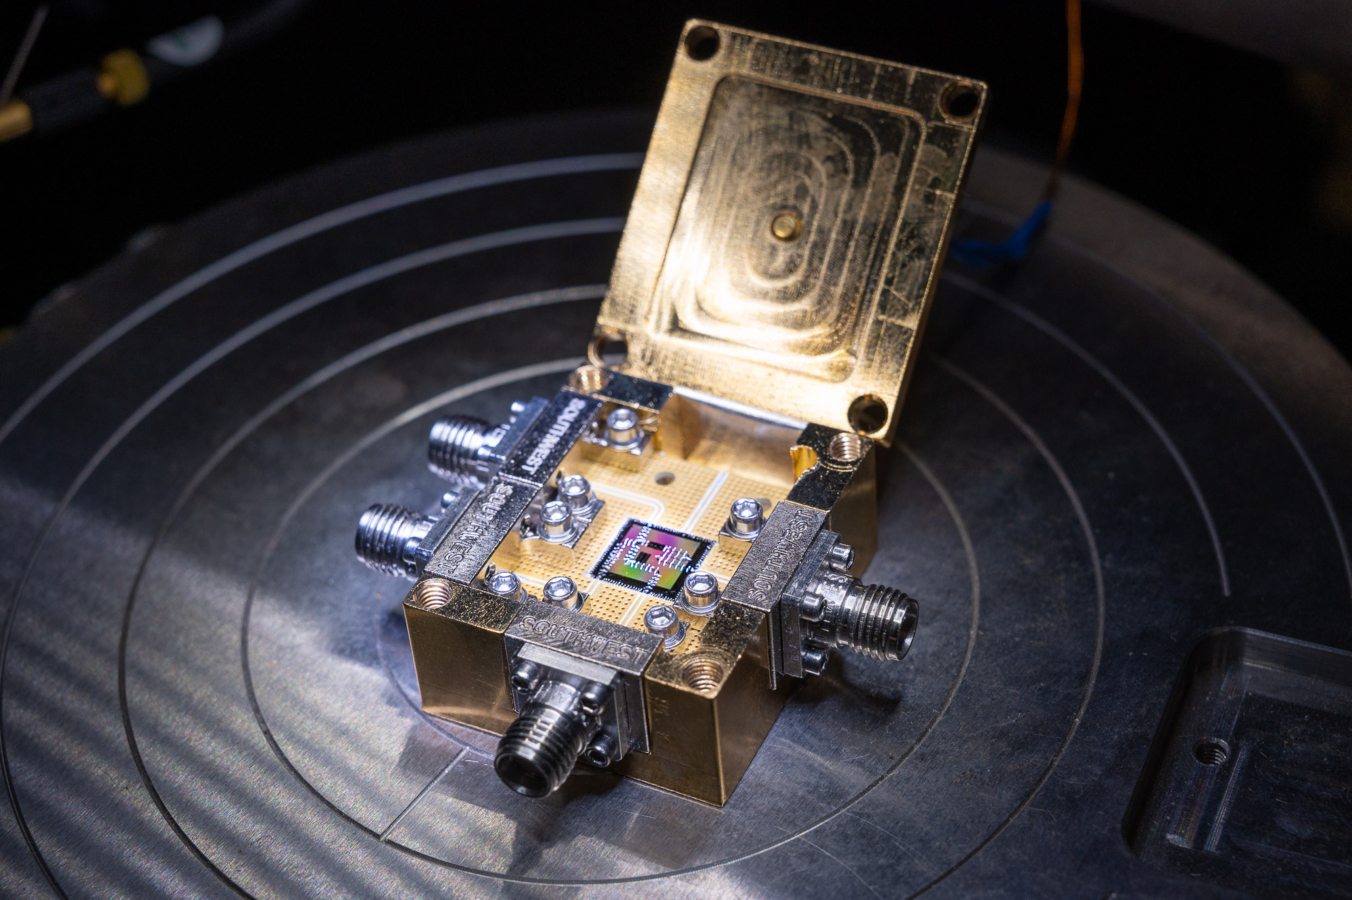 Photographie d'un protype de puce développé par la start up Alice & Bob qui élébore un ordinateur quantique  à Qubits à auto-correction (Cat Qbits).  LPENS Paris,  Laboratoire de physique mésoscopique.